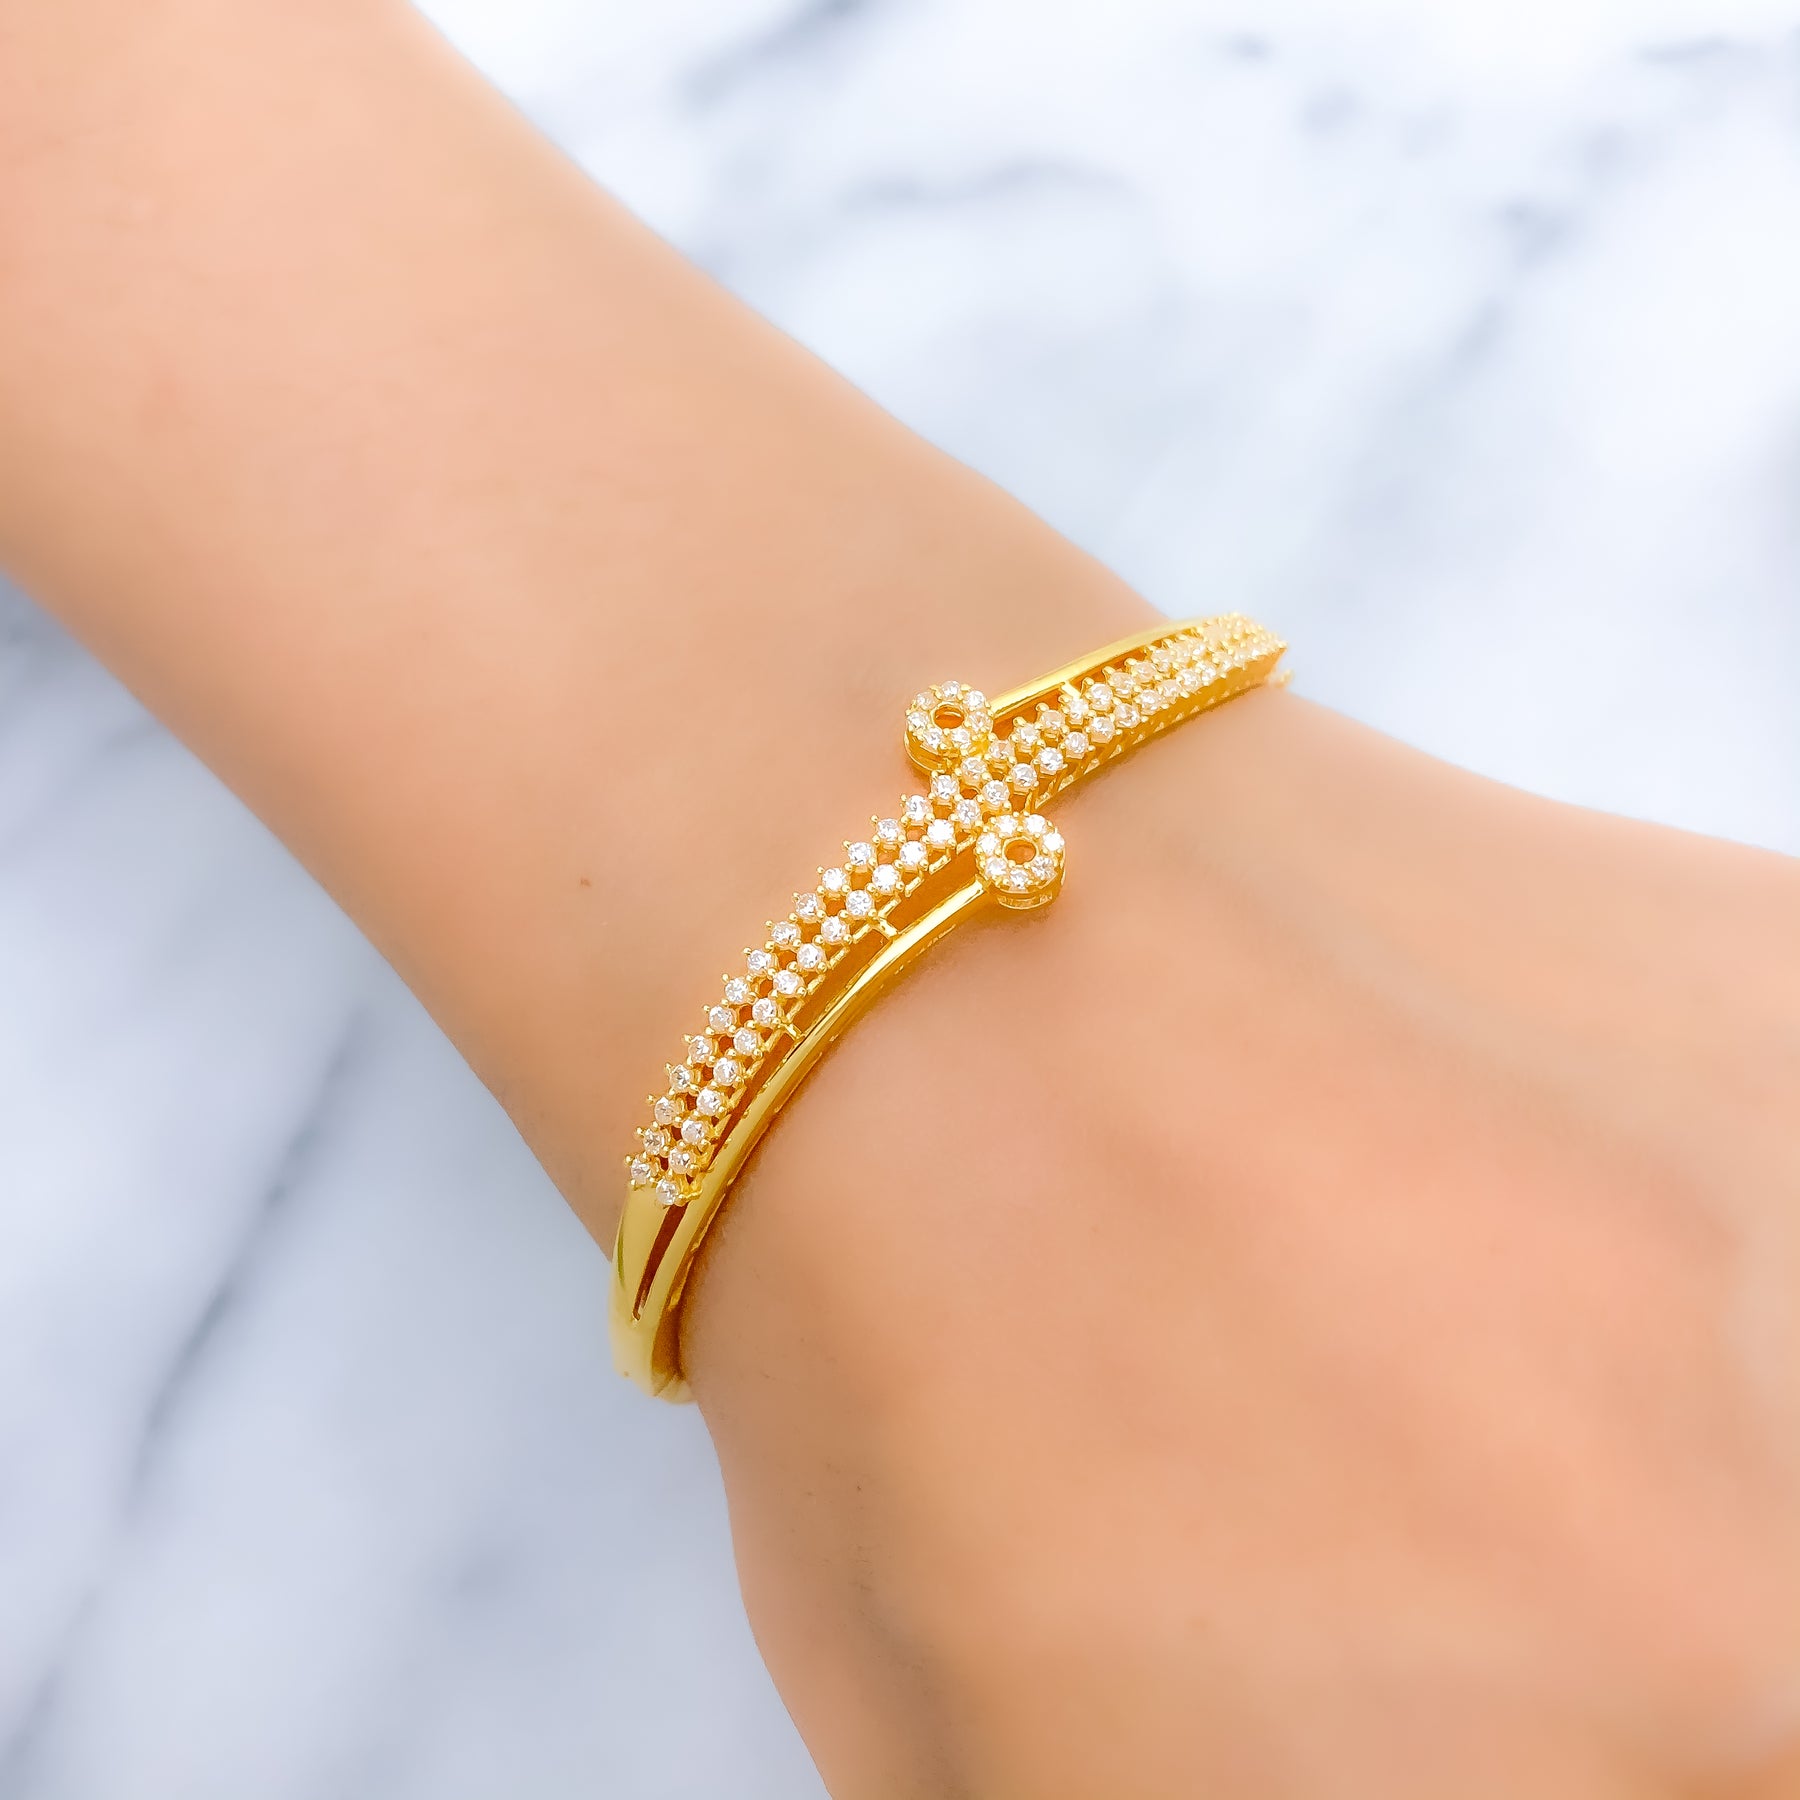 Buy Delicate Floral Bracelet for Women, Lace Gold Bangle Bracelet, Online  in India - Etsy